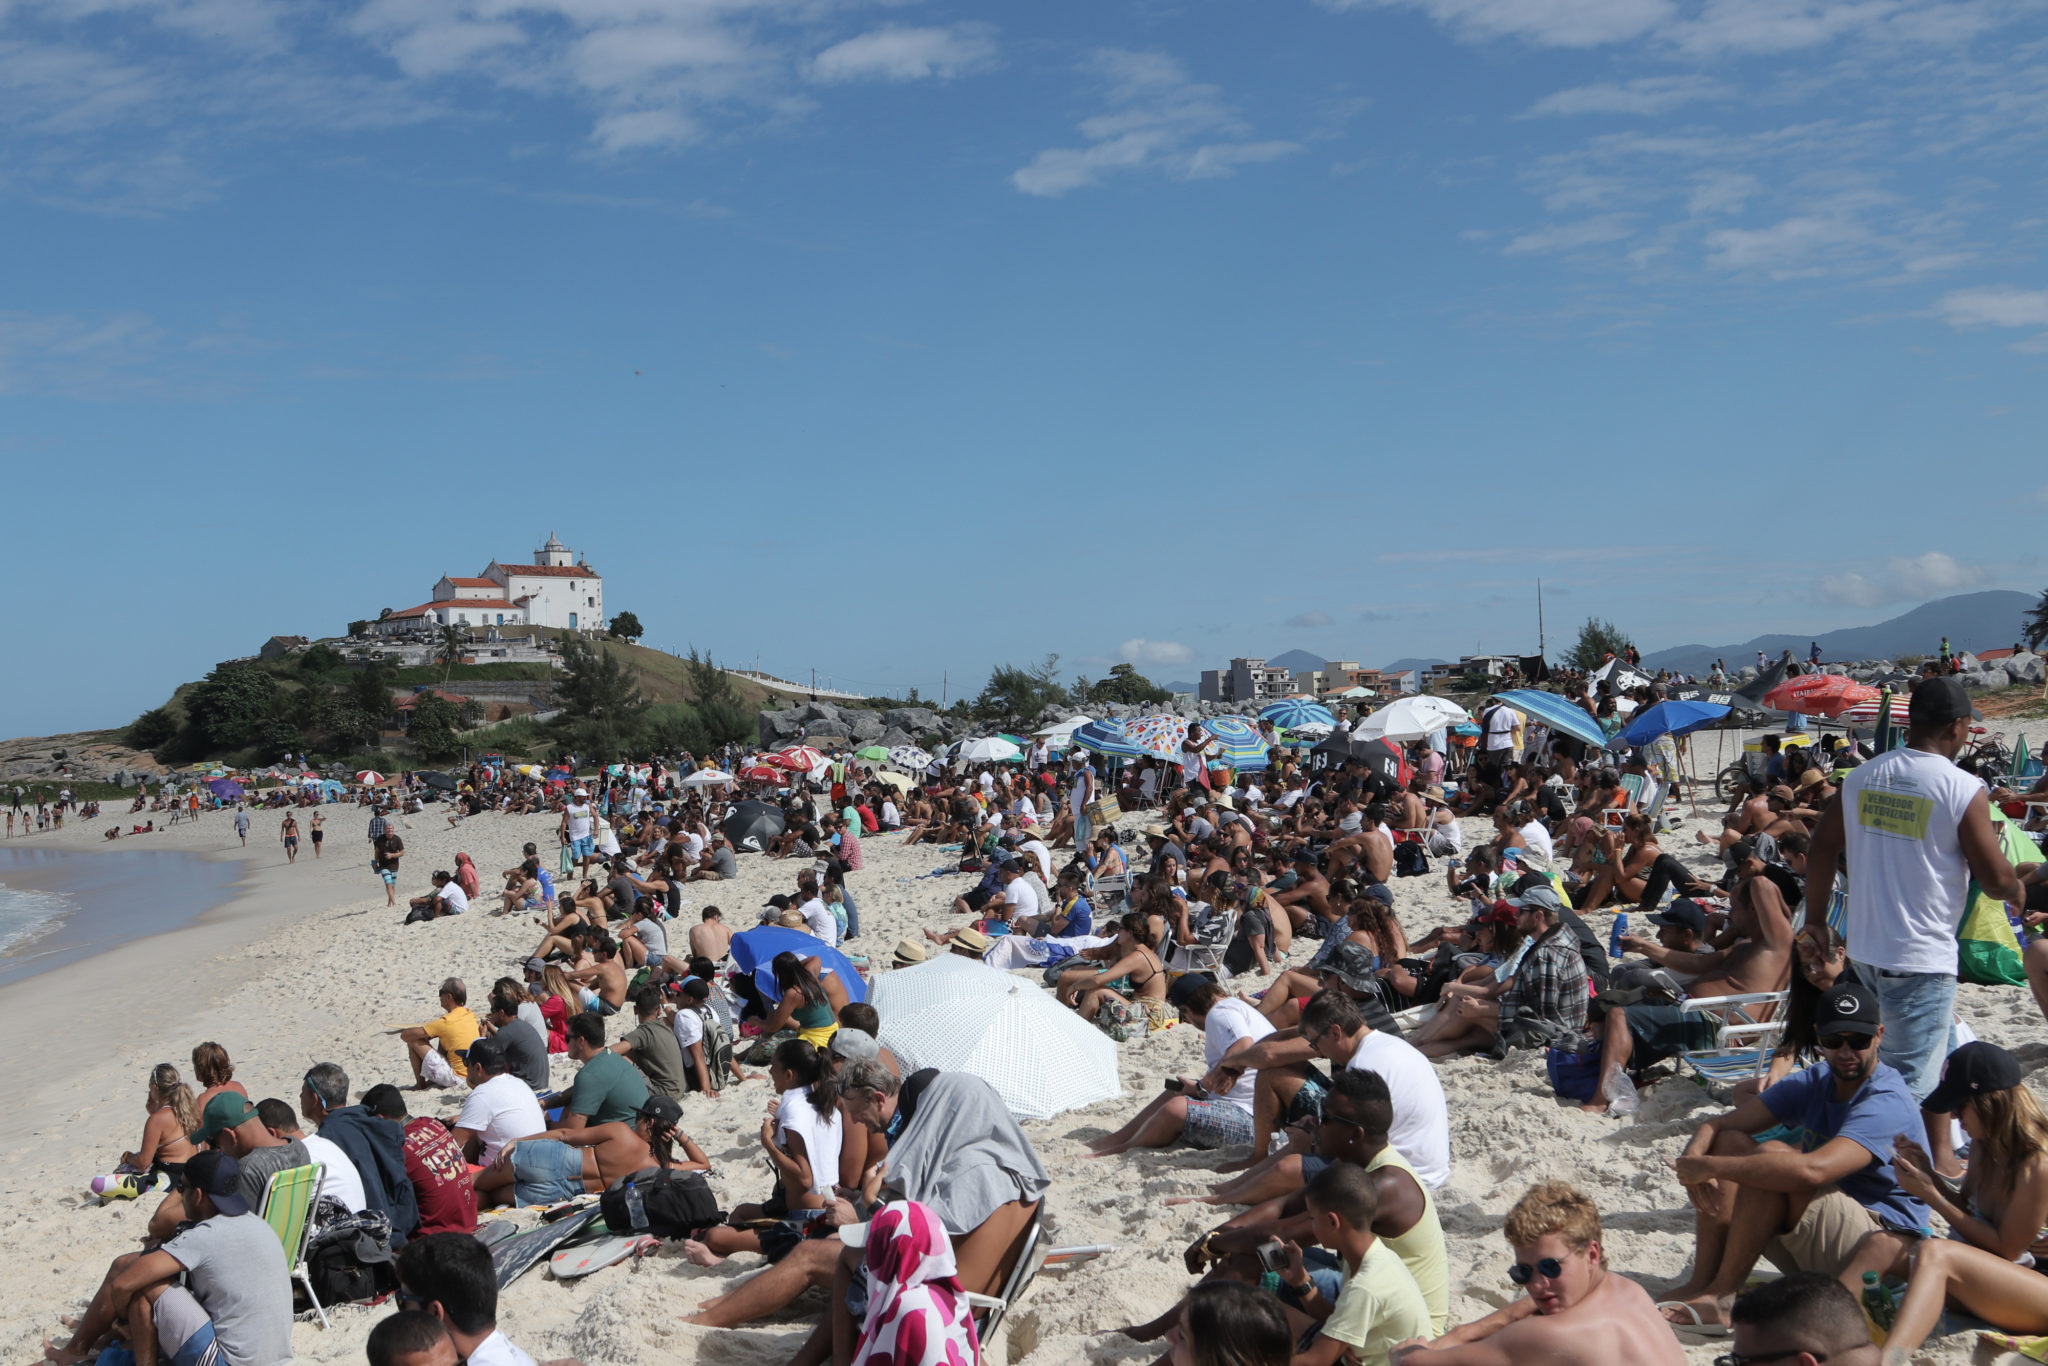 Crowd at the Barrinha Beach at the Oi Rio Pro in Saquarema, Rio de Janeiro, BRA.